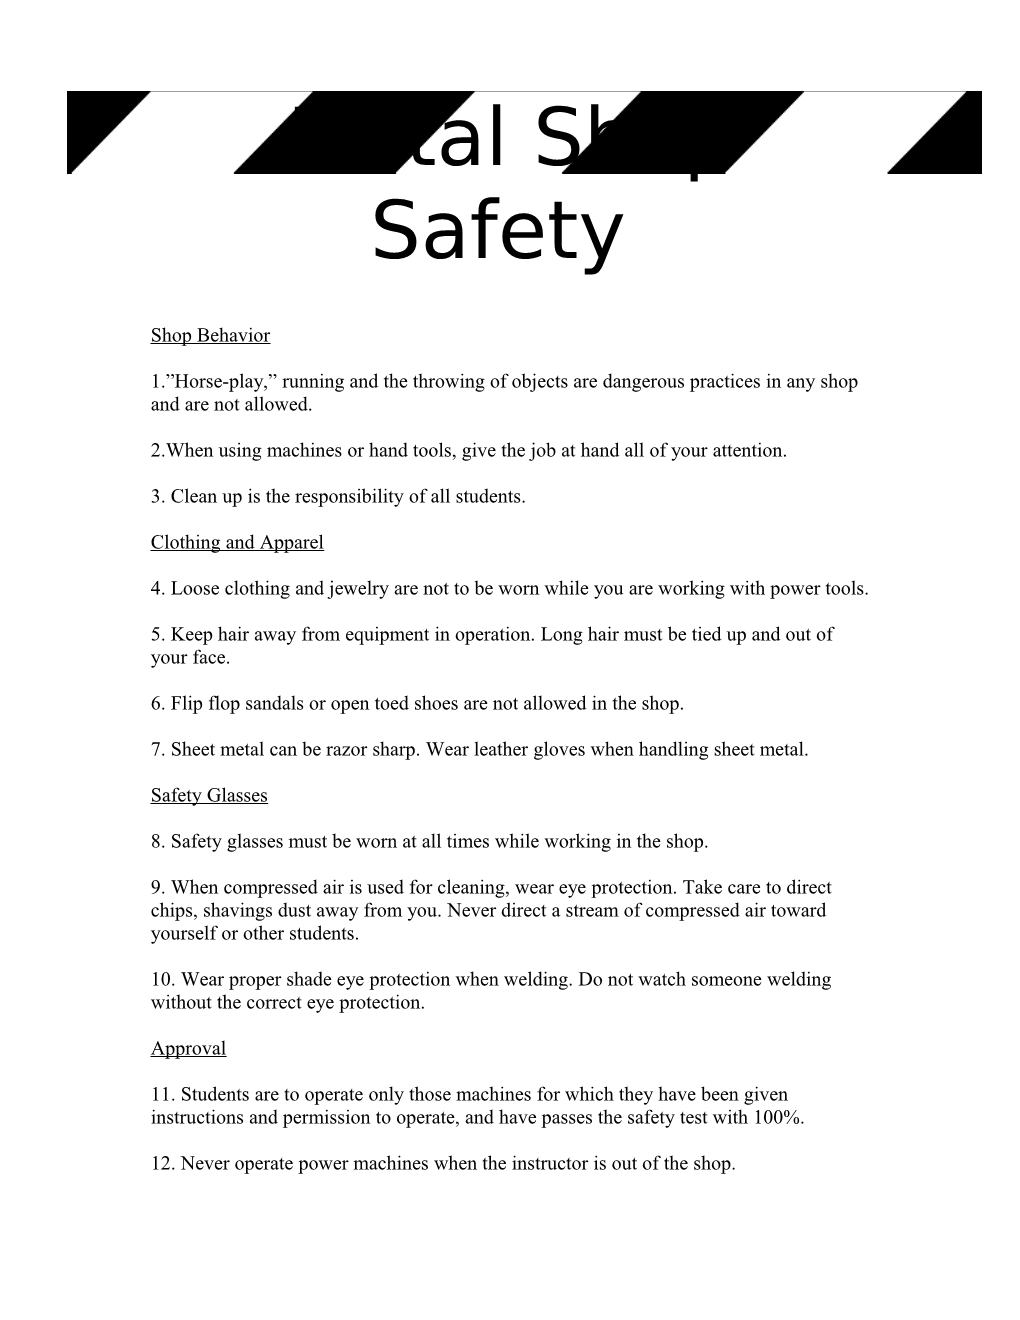 Metal Shop Safety Regulations